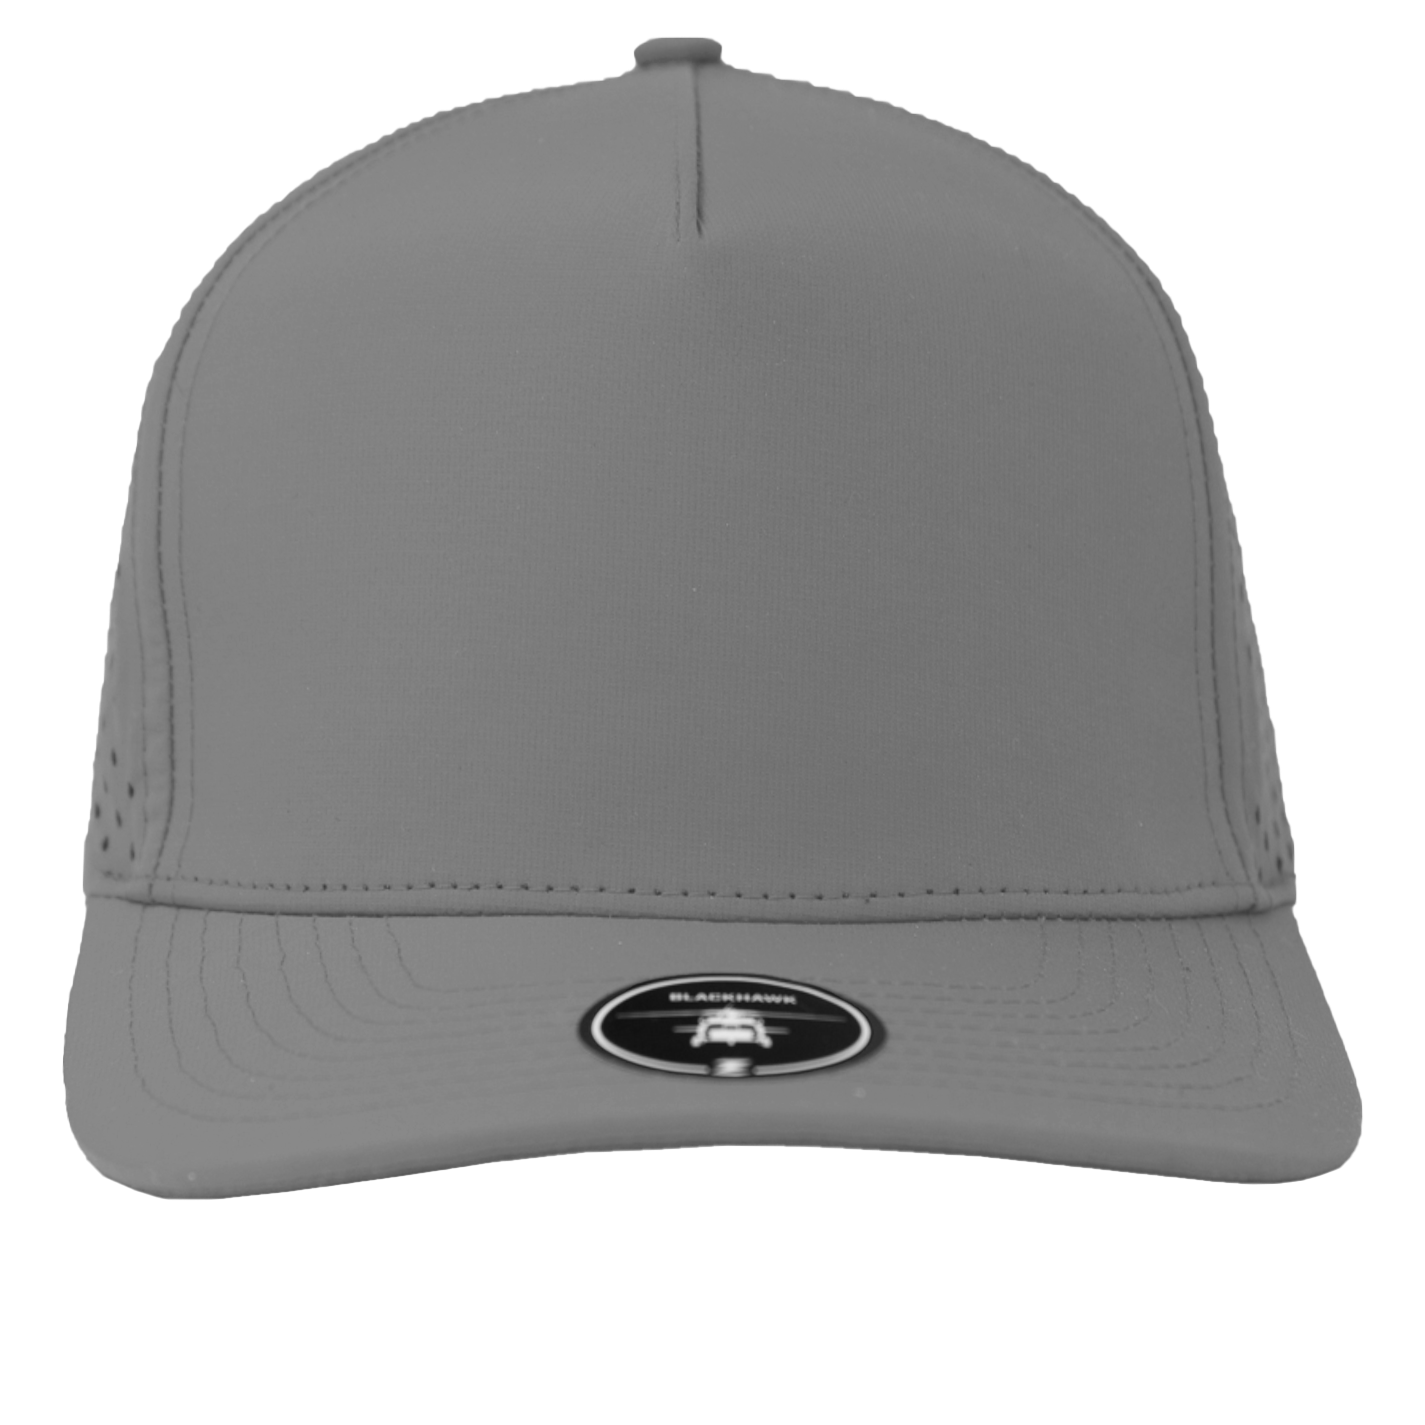 BLACKHAWK Blank-Water Repellent hat-Zapped Headwear-Grey-Zapped Headwear